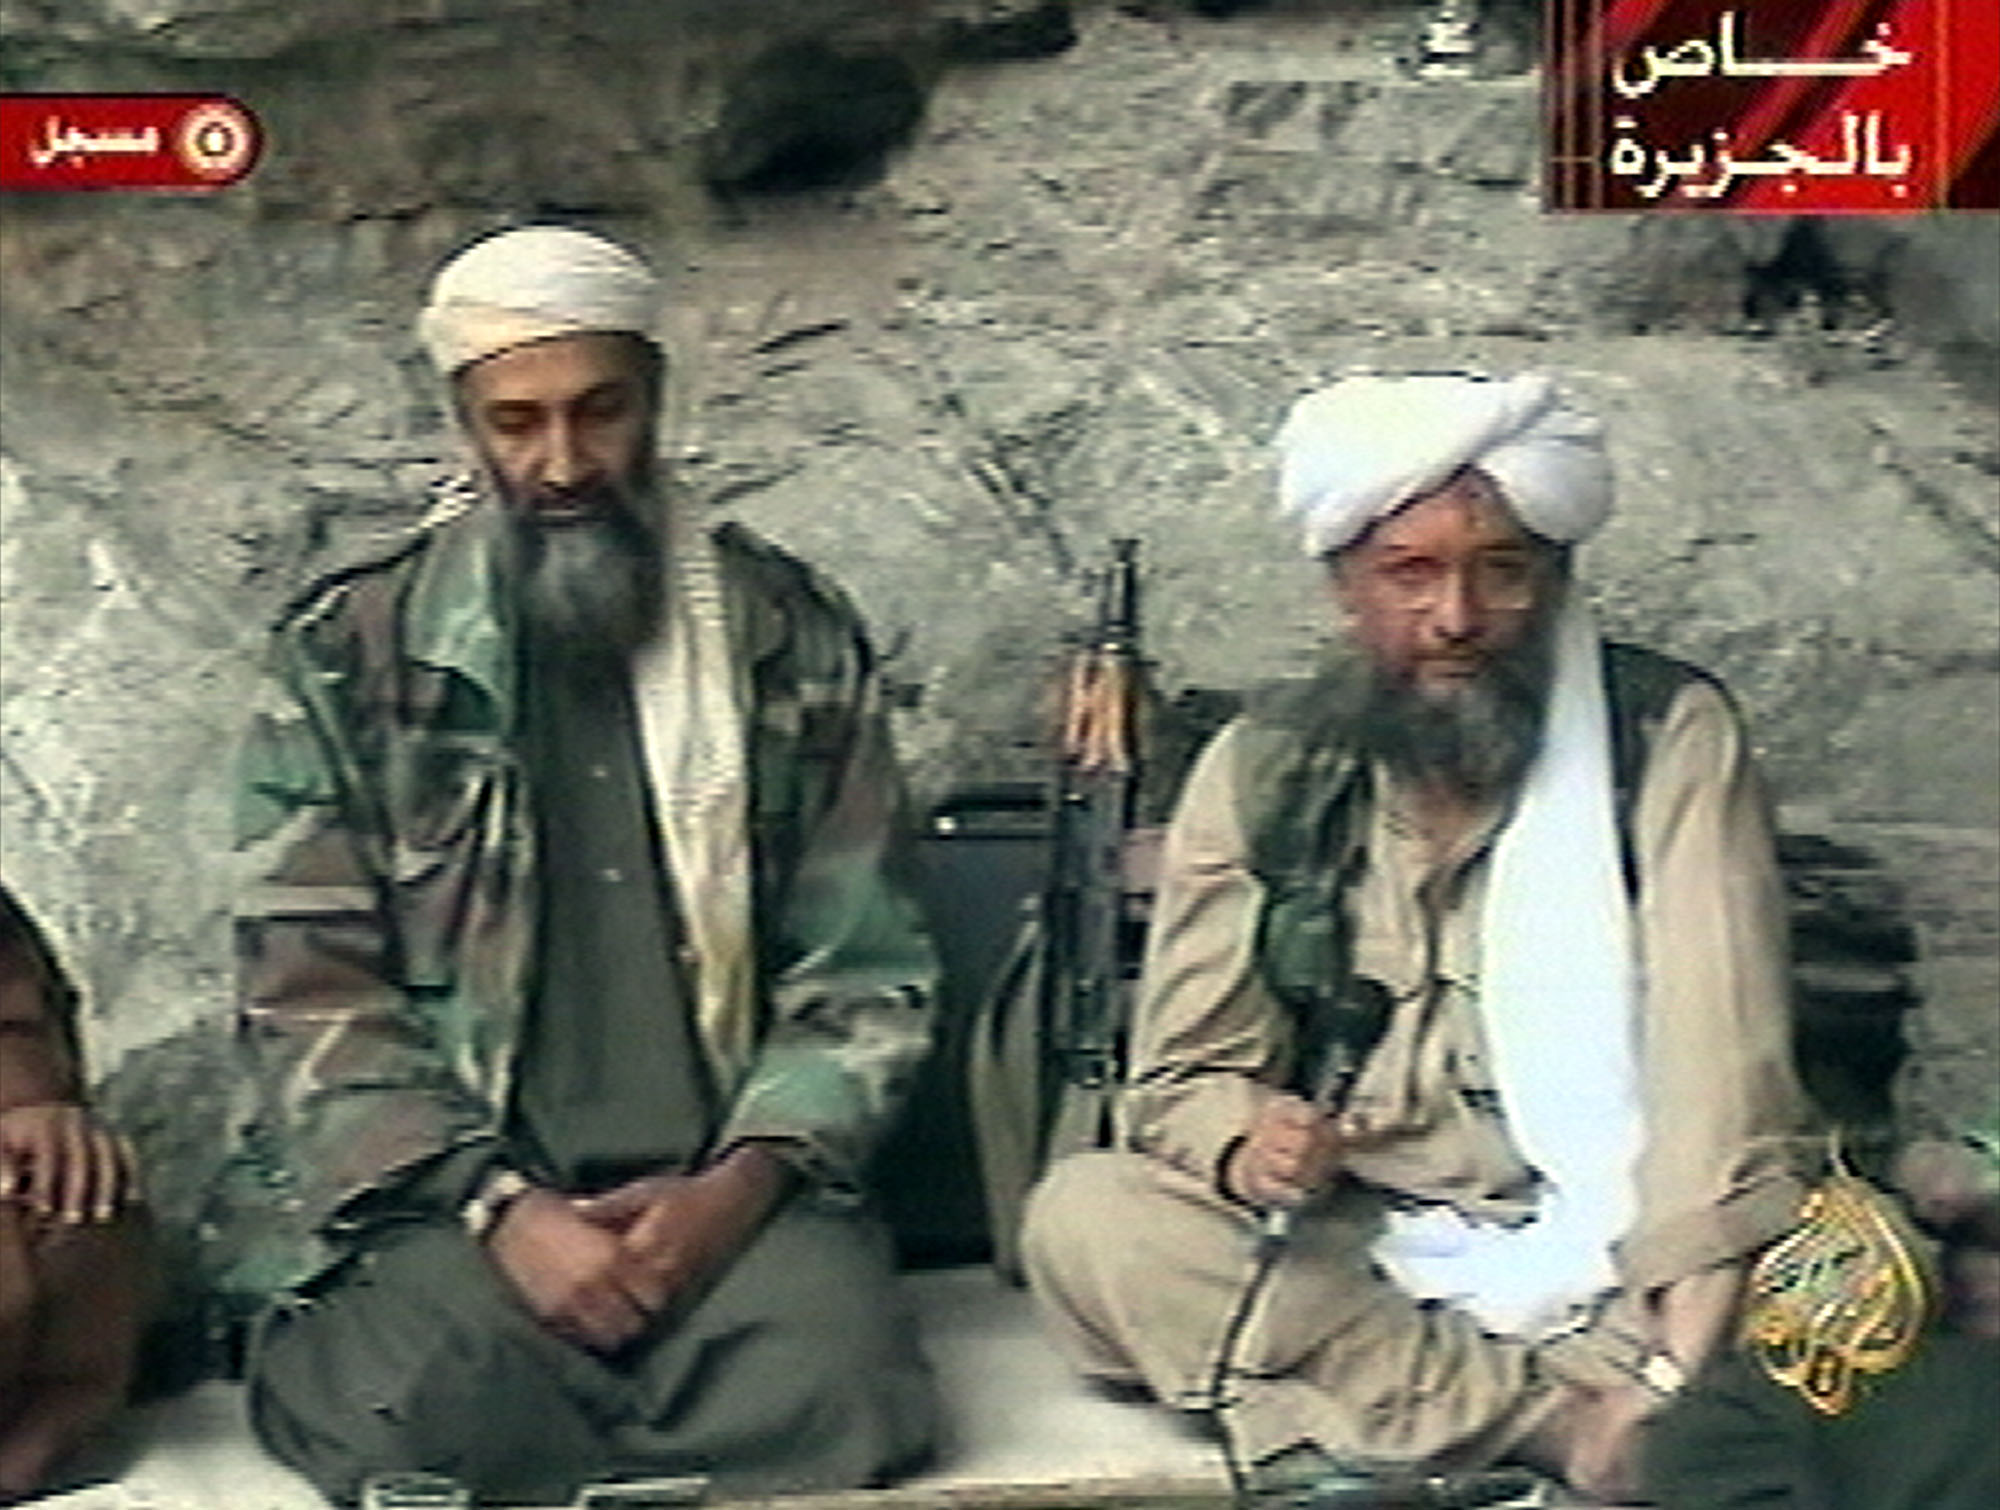 Bredvid Usama Bin Laden sitter Ayman al-Zawahri, som nu efterträff som al-Quaidas ledare efter Bin Laden. 